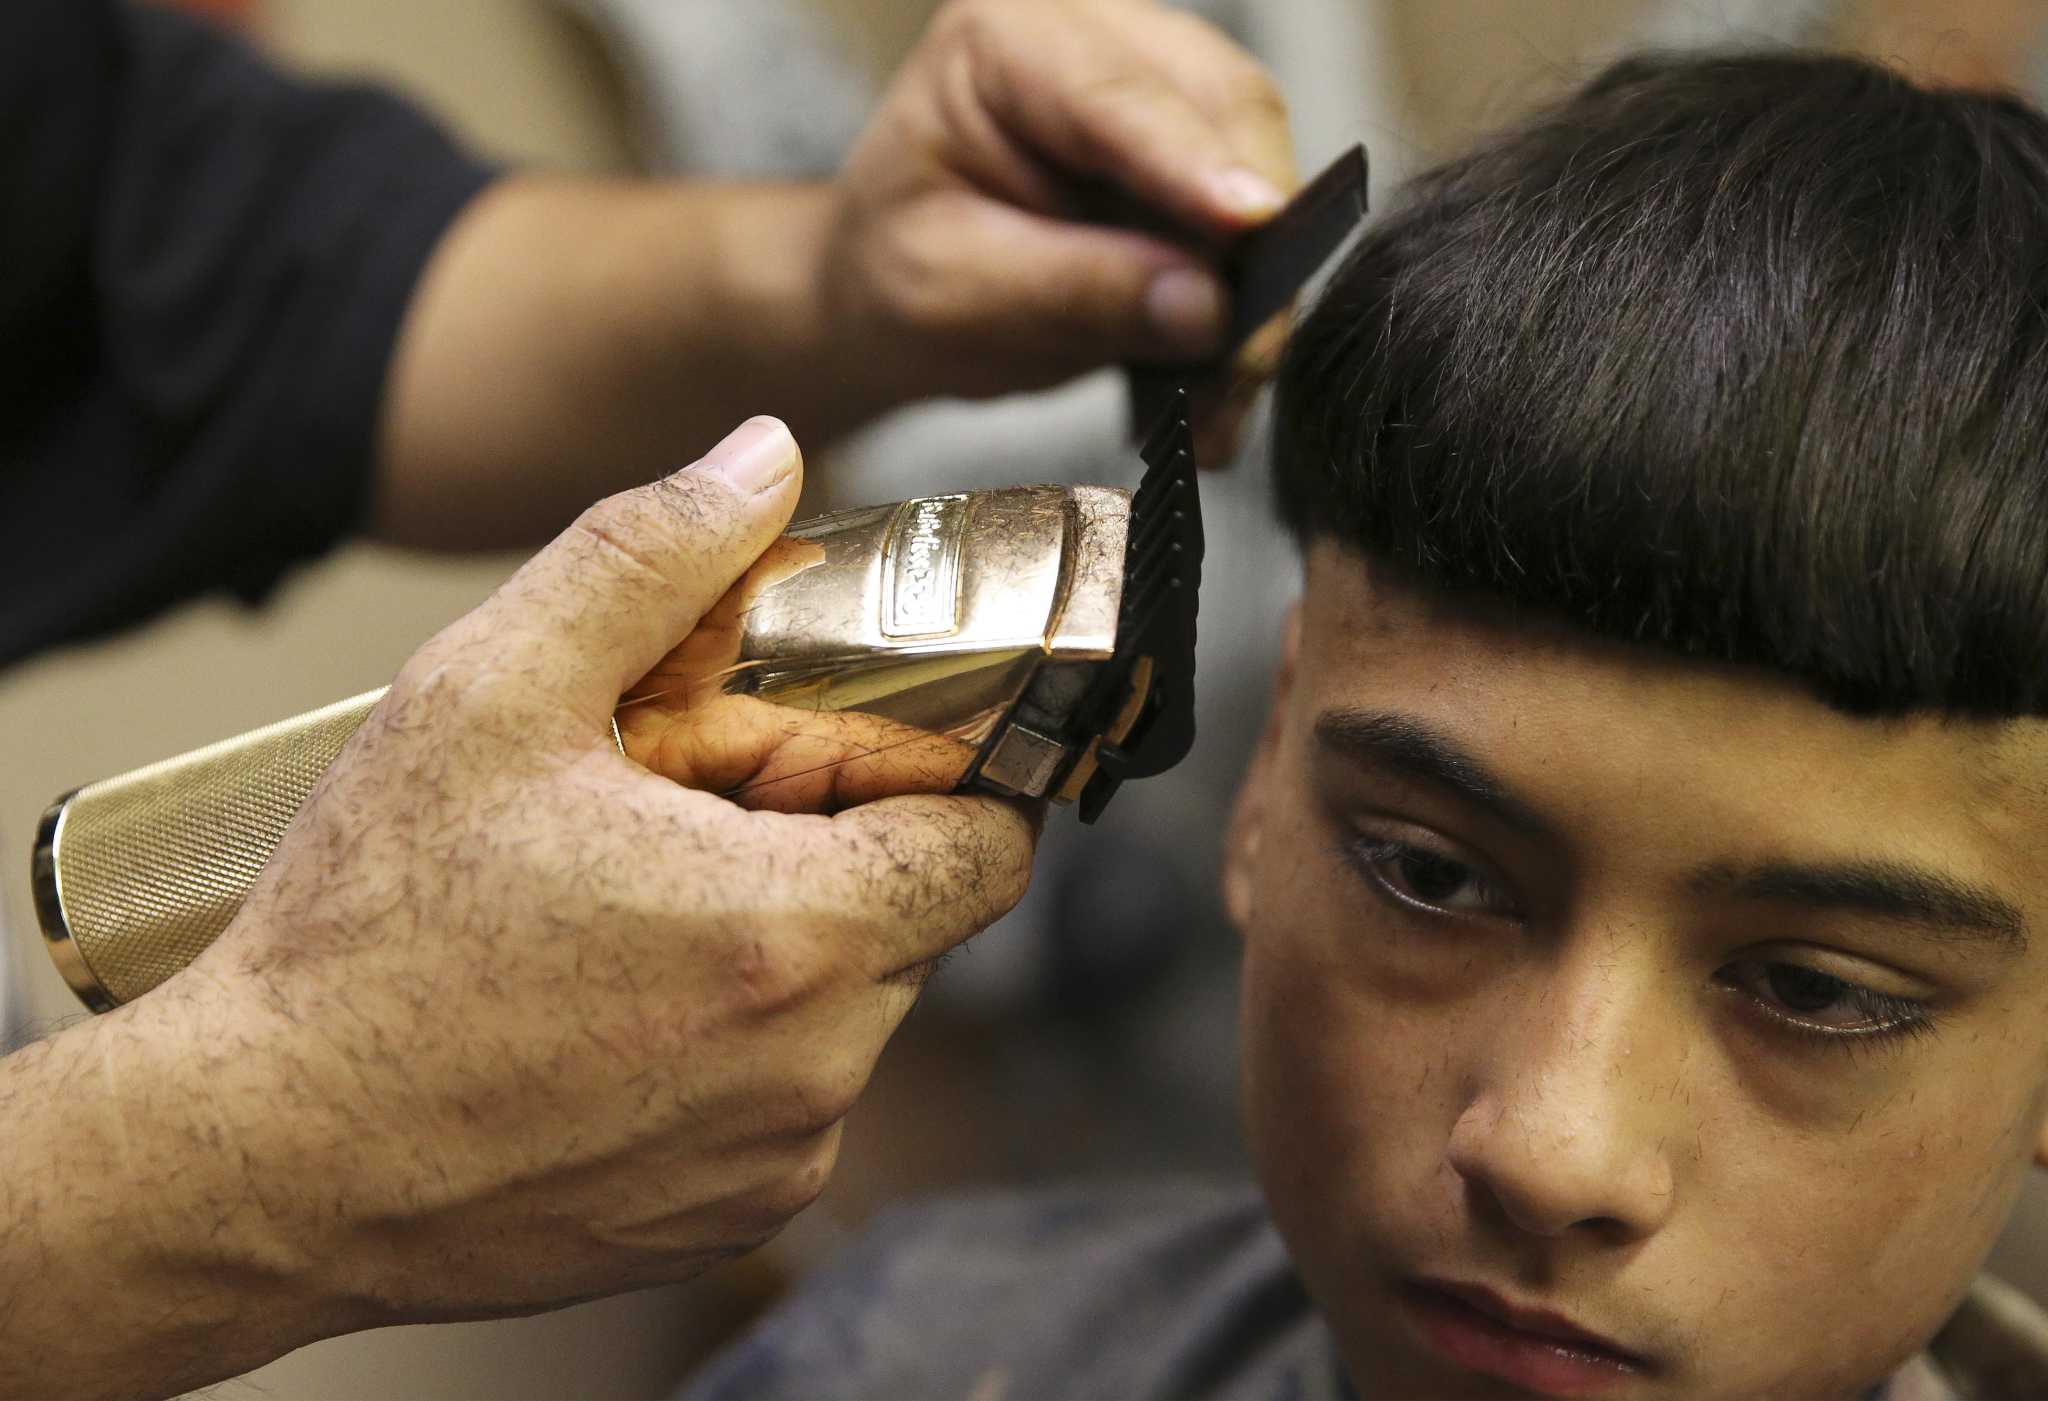 El corte de pelo de ‘Edgar’ que se burla San Antonio puede tener sus raíces en la cultura indígena